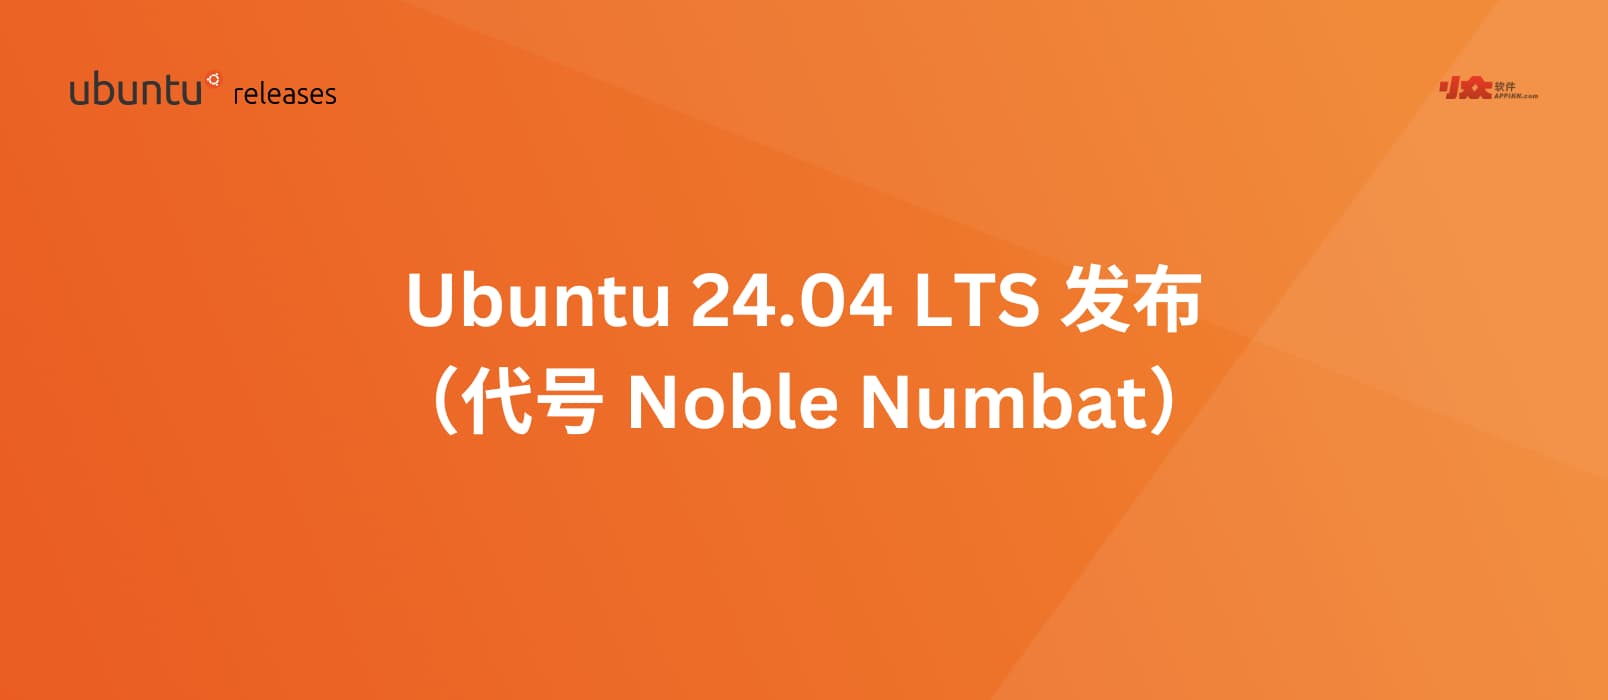 Ubuntu 24.04 LTS（代号“Noble Numbat”）已发布